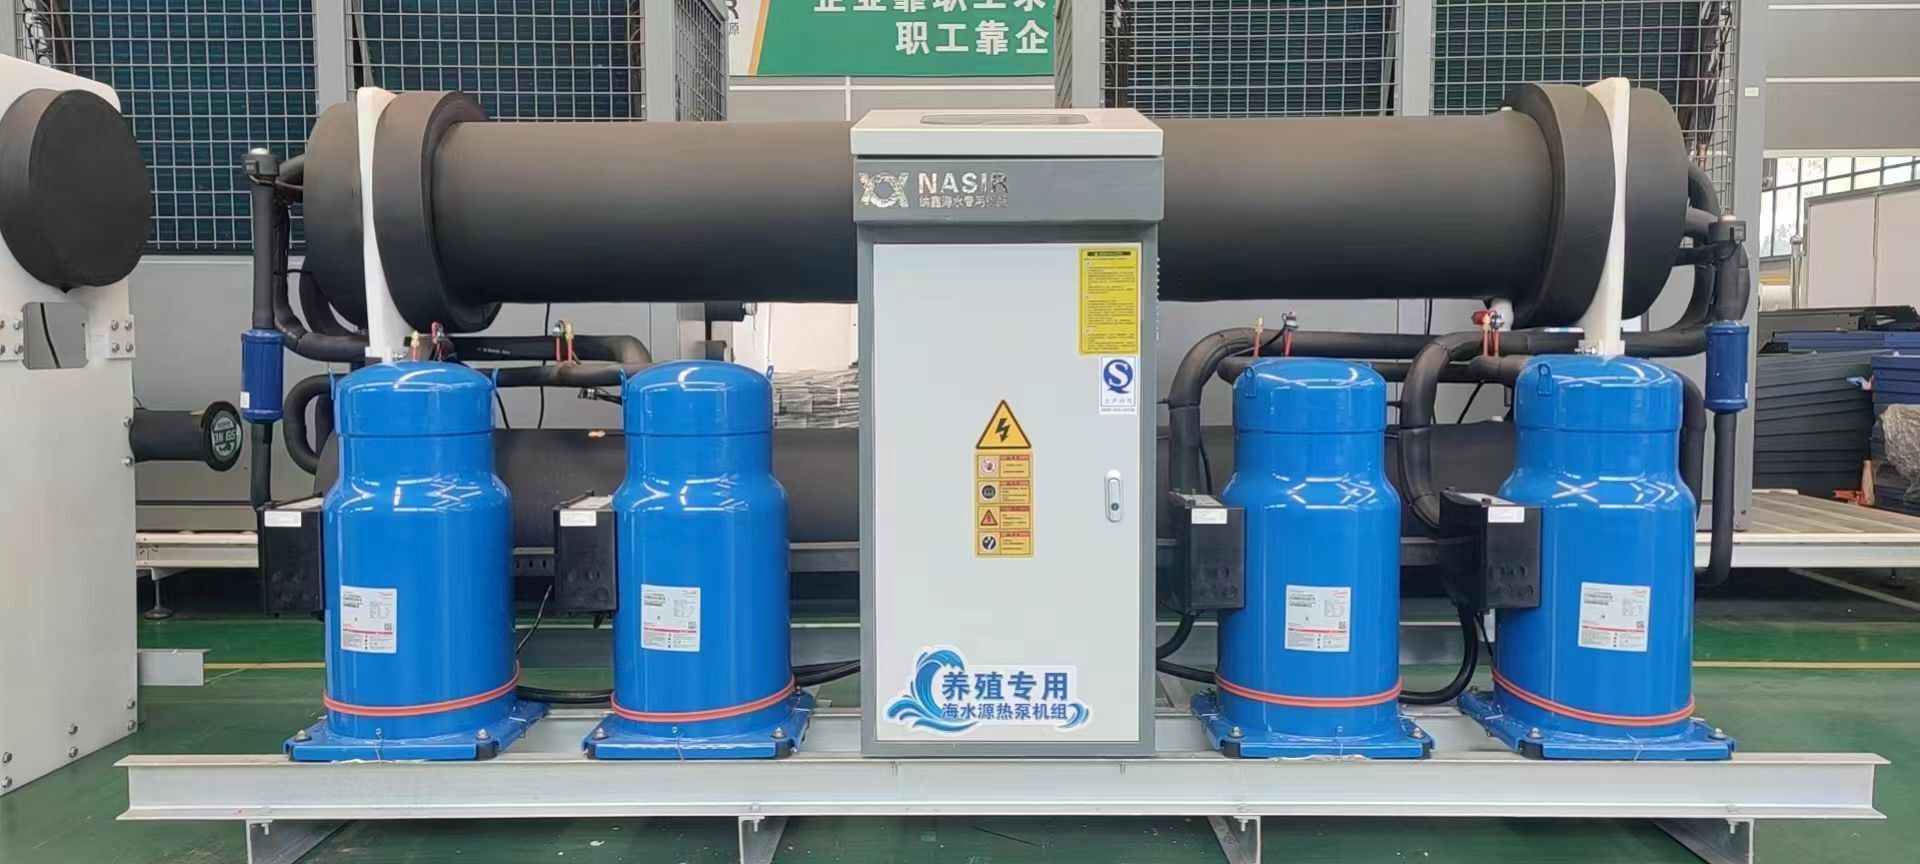 养殖专用海水源热泵机组设备